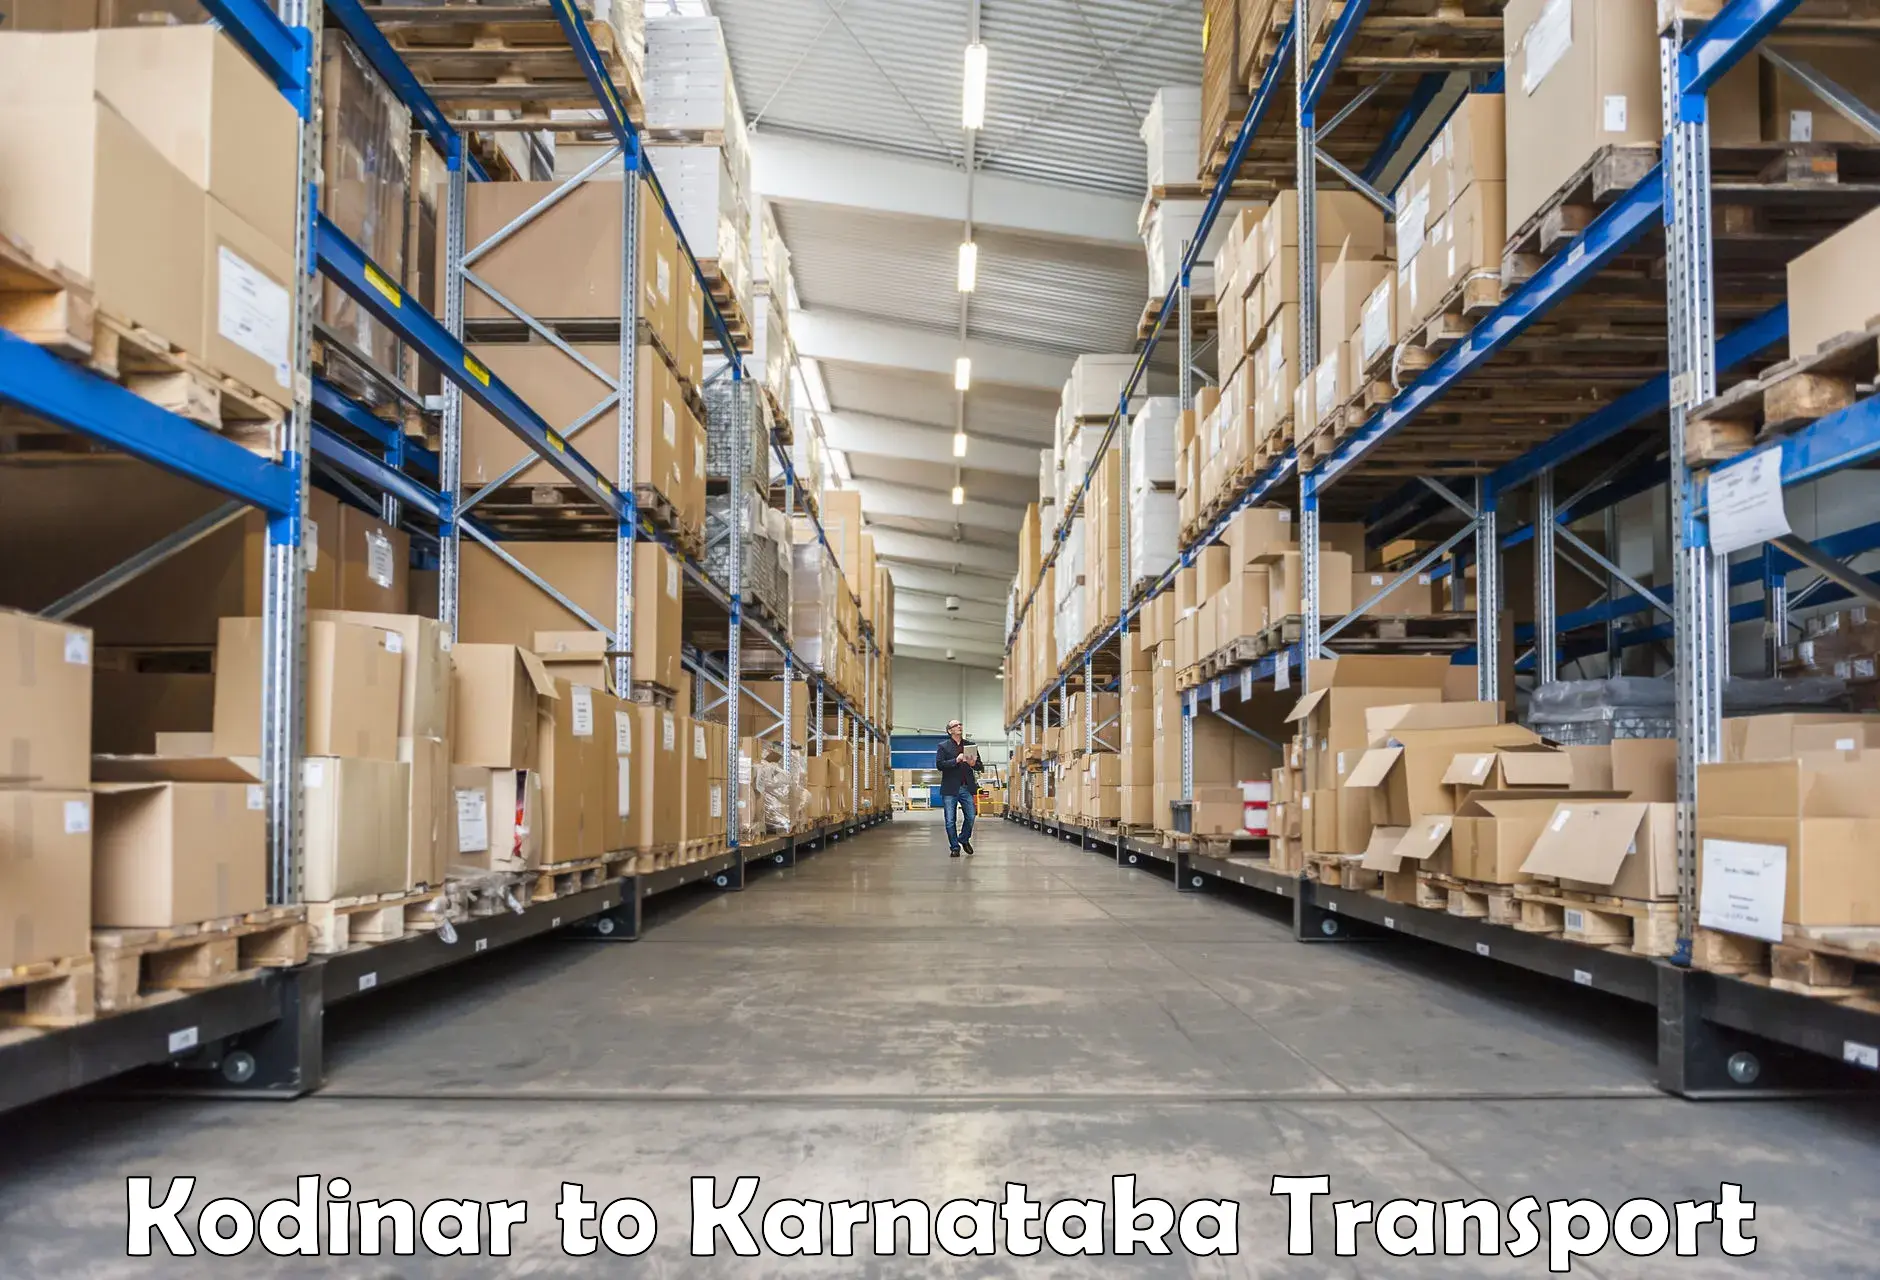 Transport in sharing Kodinar to Karkala